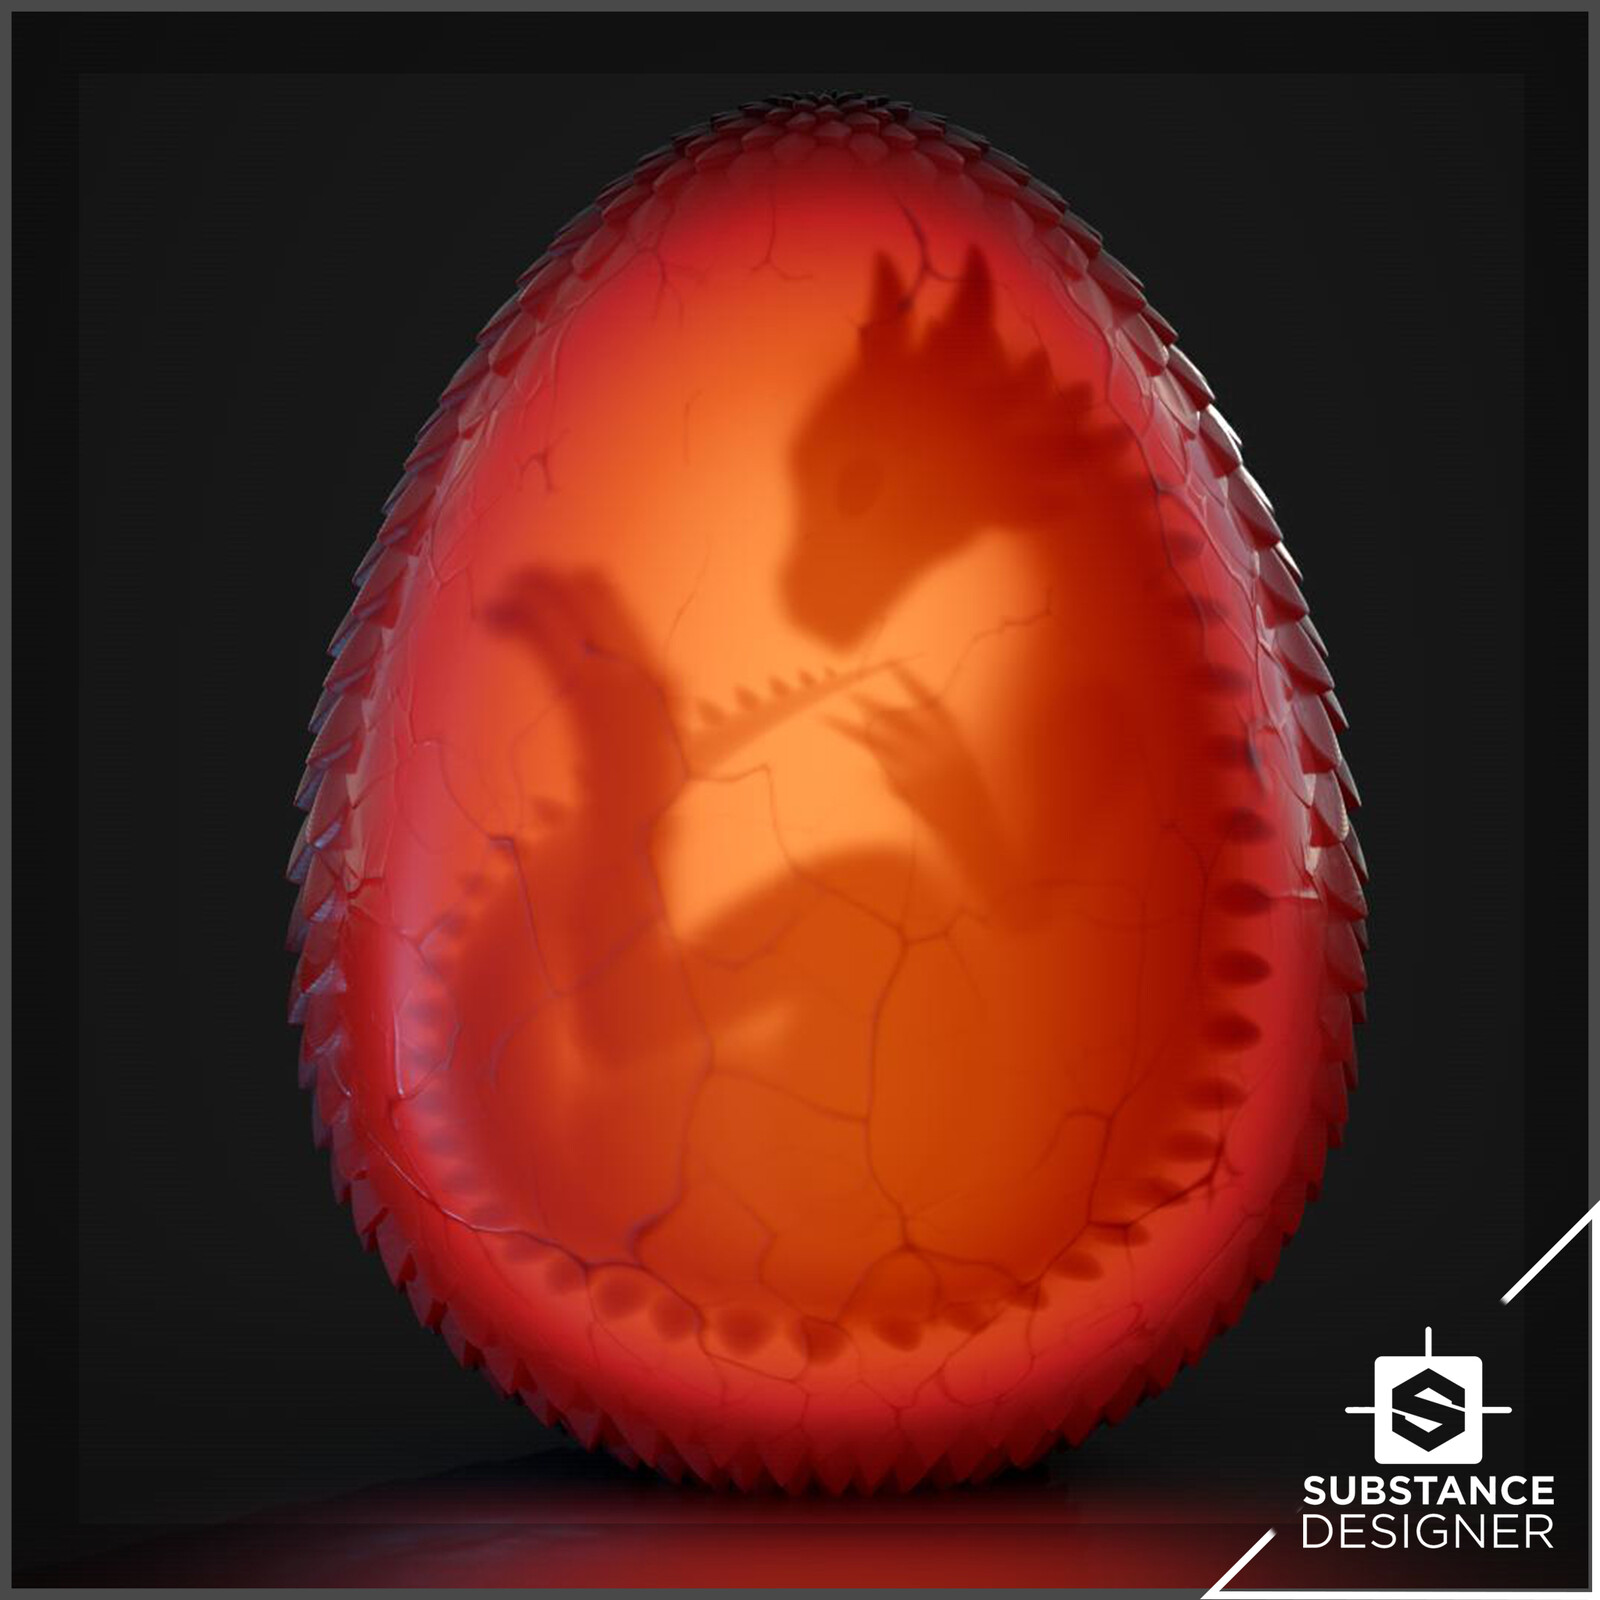 Dragon egg  with Substance Designer